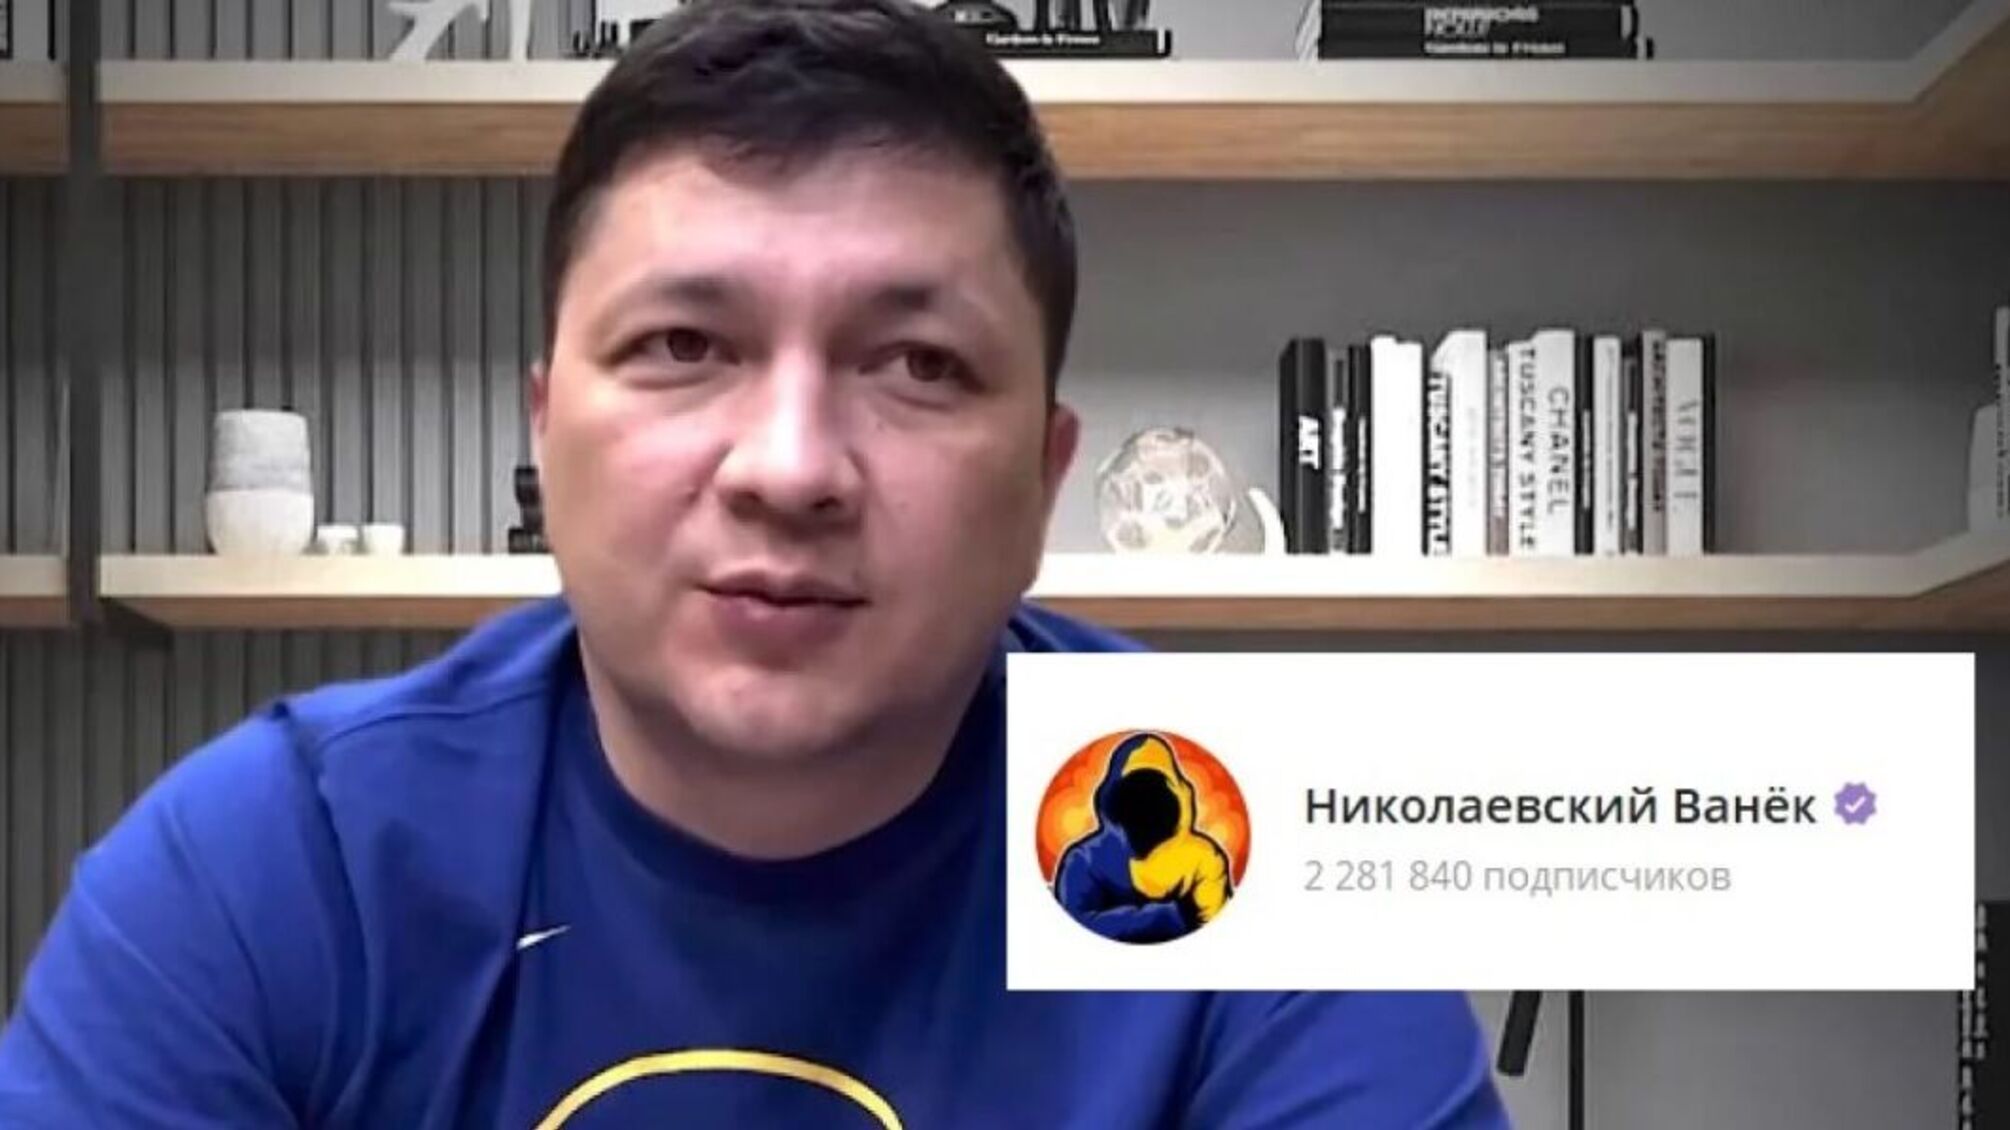 Виталий Ким сотрудничает с администратором популярного Telegram-канала 'Николаевский Ваньок'